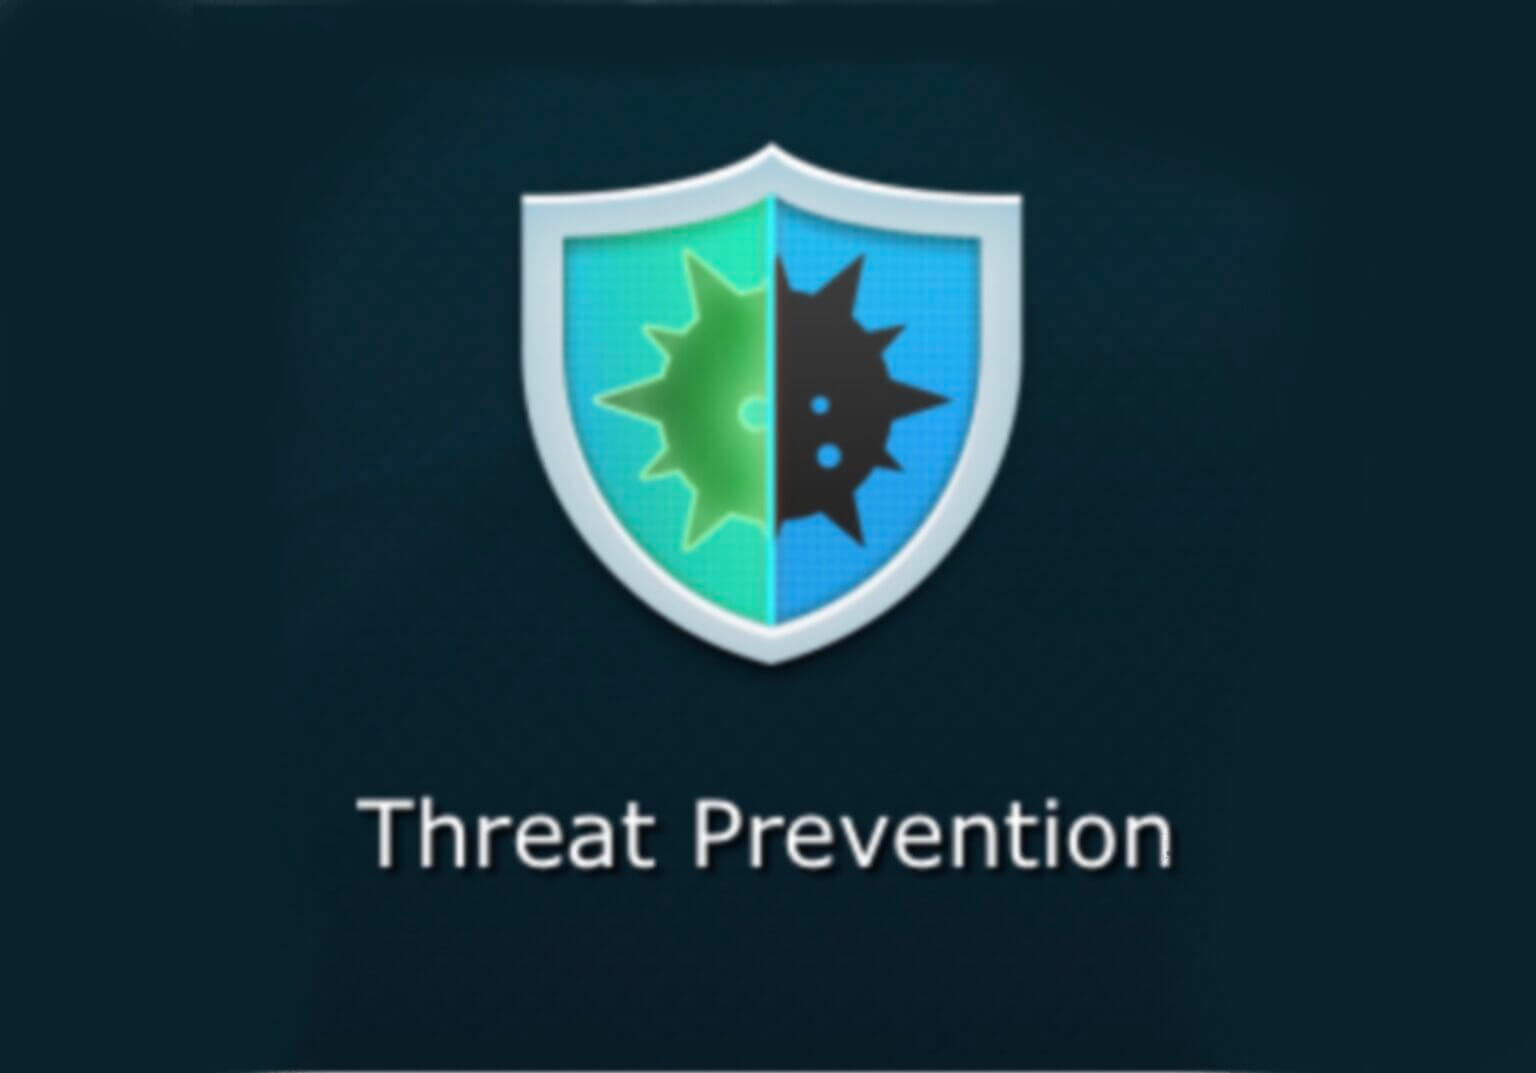 [Synology] ルーター用のセキュリティソフト: Threat Preventionは、悪意のあるパケットを遮断 [2021/03/12] ID519